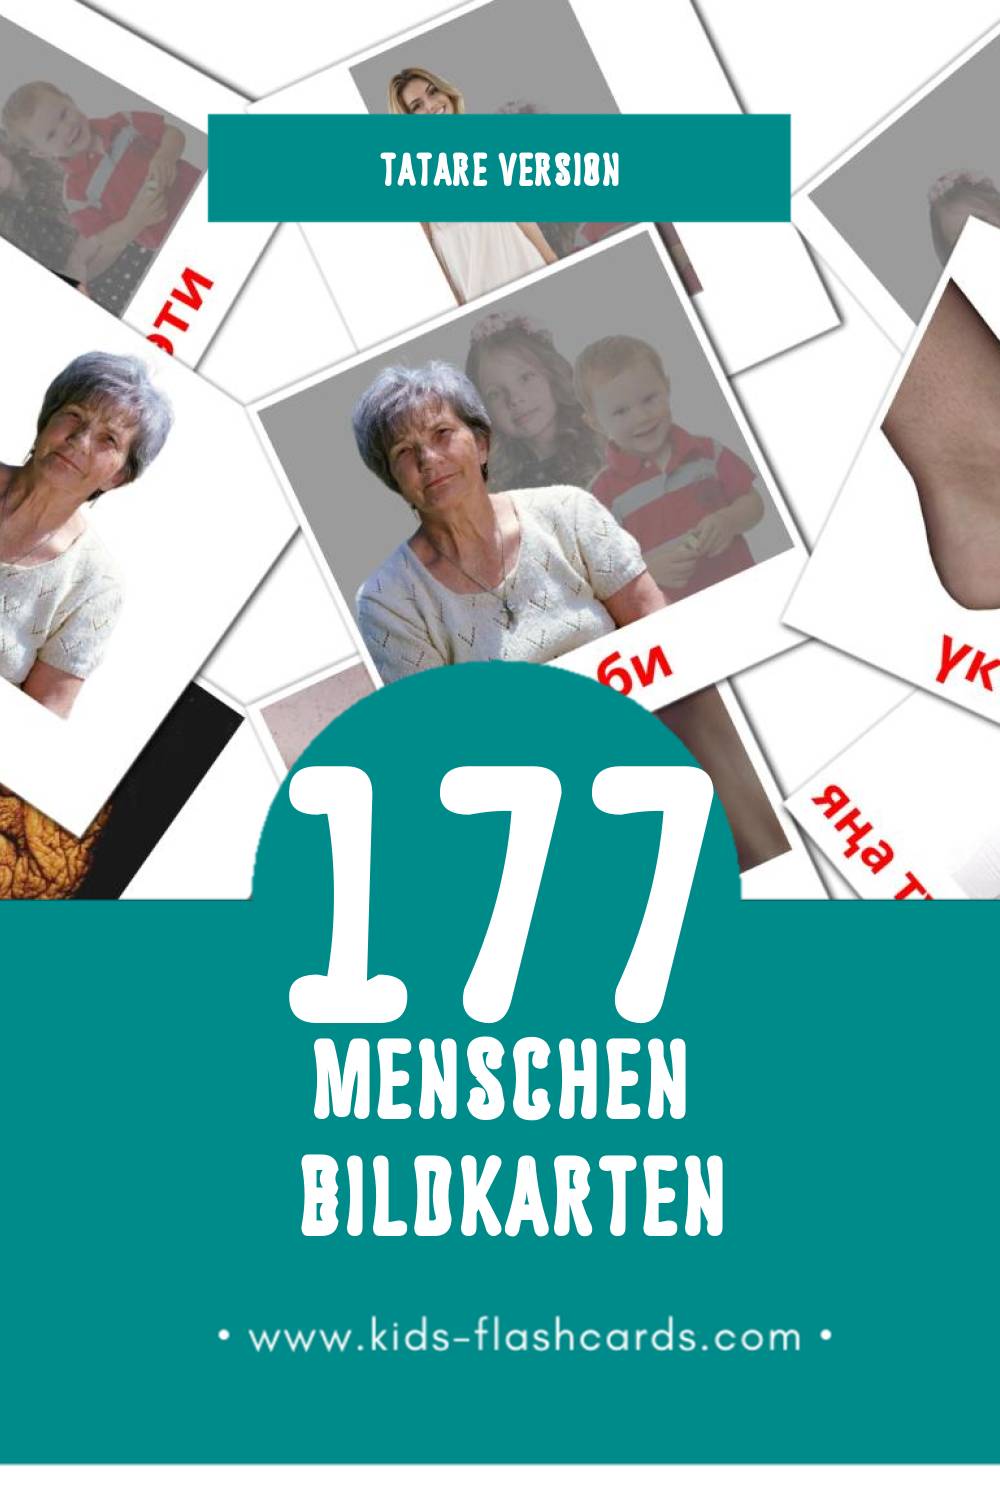 Visual Кеше Flashcards für Kleinkinder (58 Karten in Tatar)